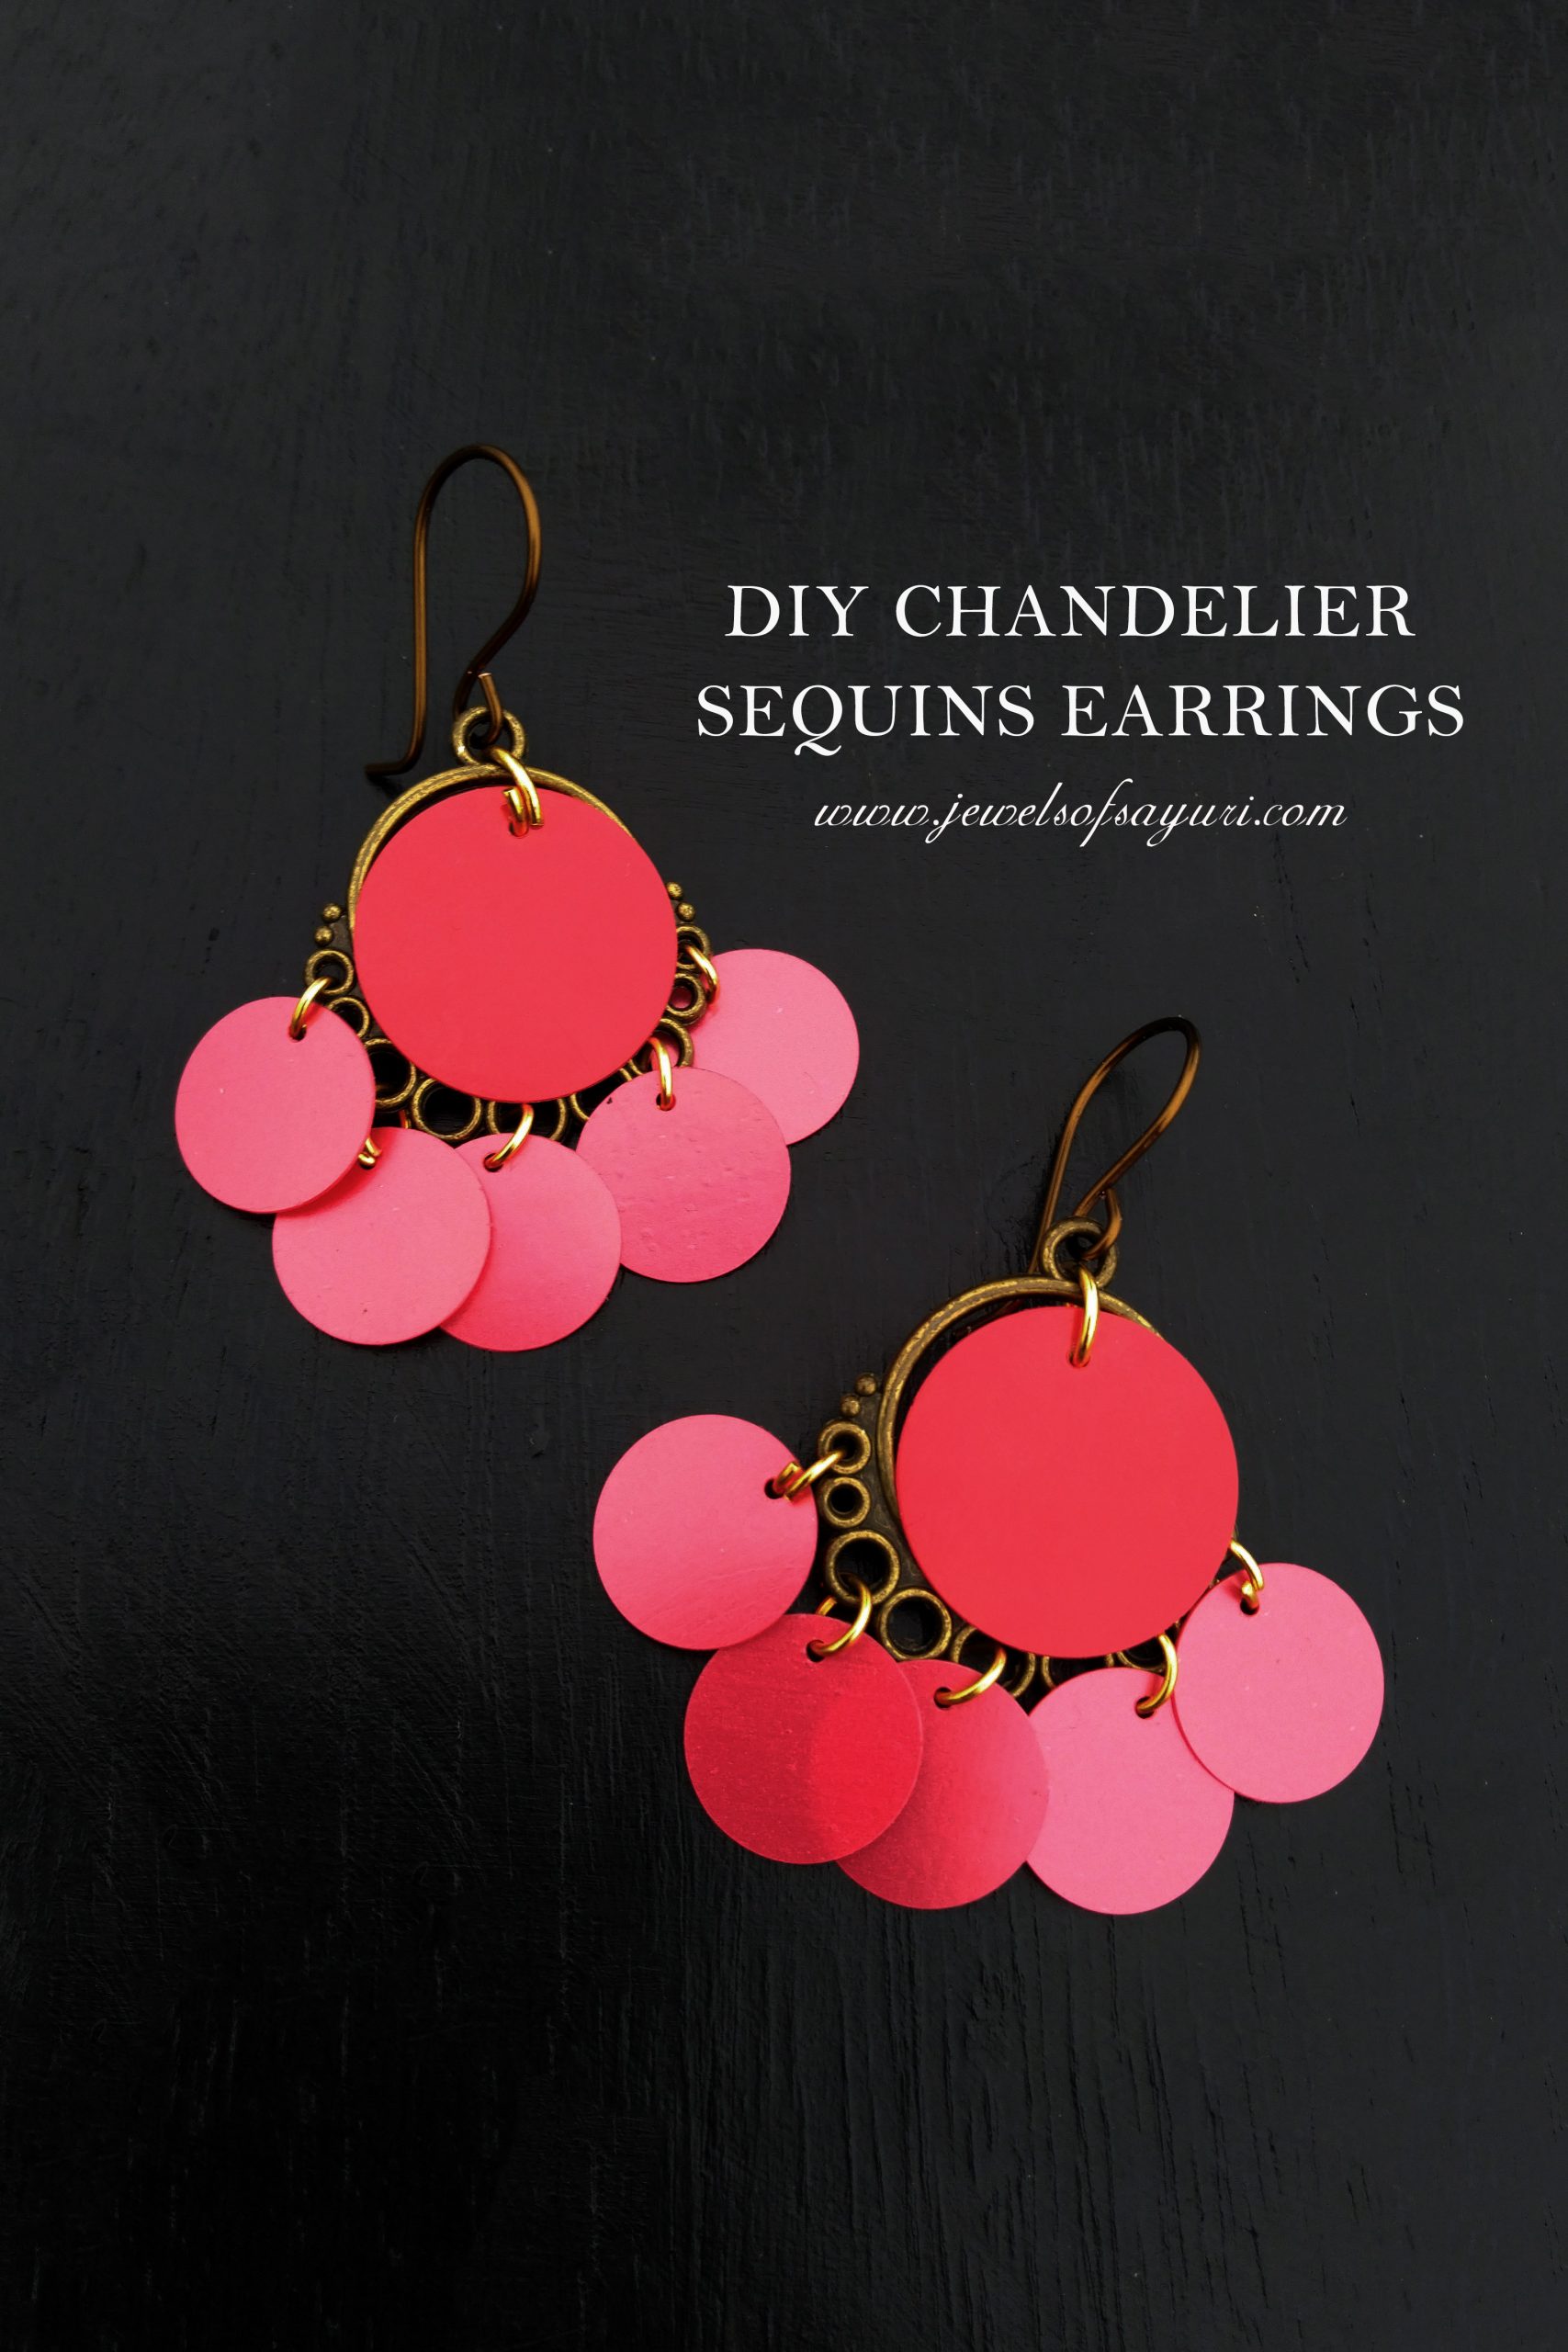 DIY sequins chandelier earrings tutorial